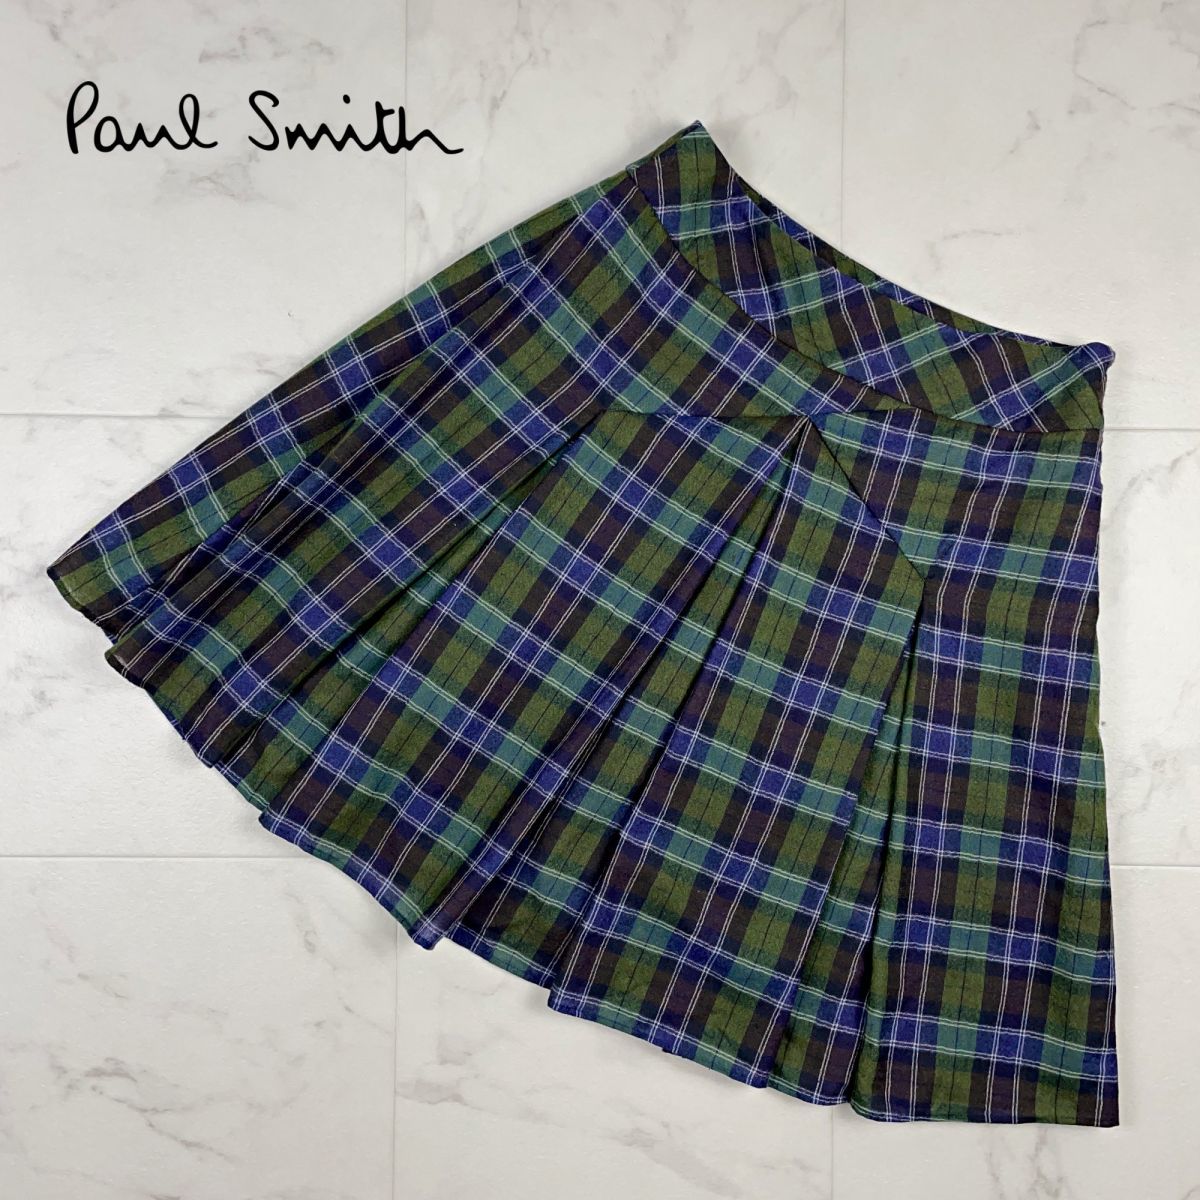 レインボーシックス  W74〜78 巻きスカート SMITH PAUL その他